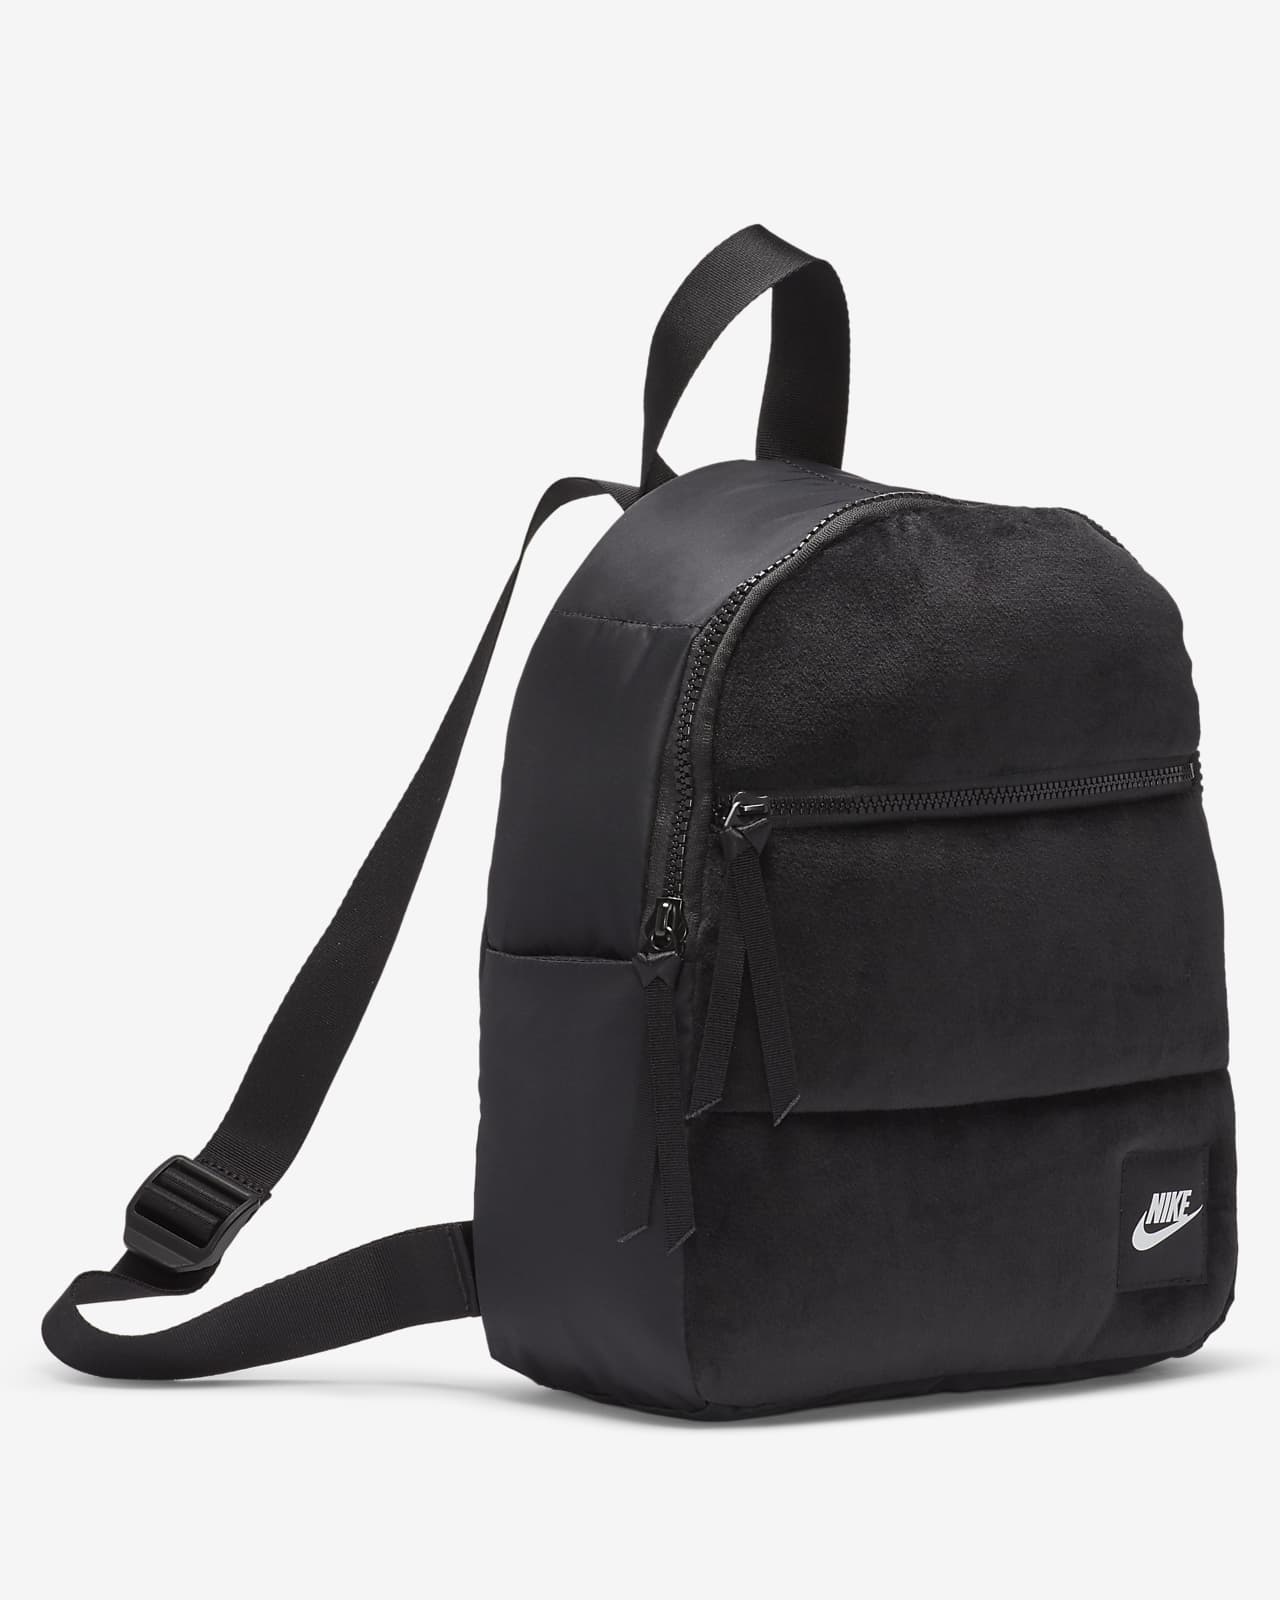 nike mini backpack black